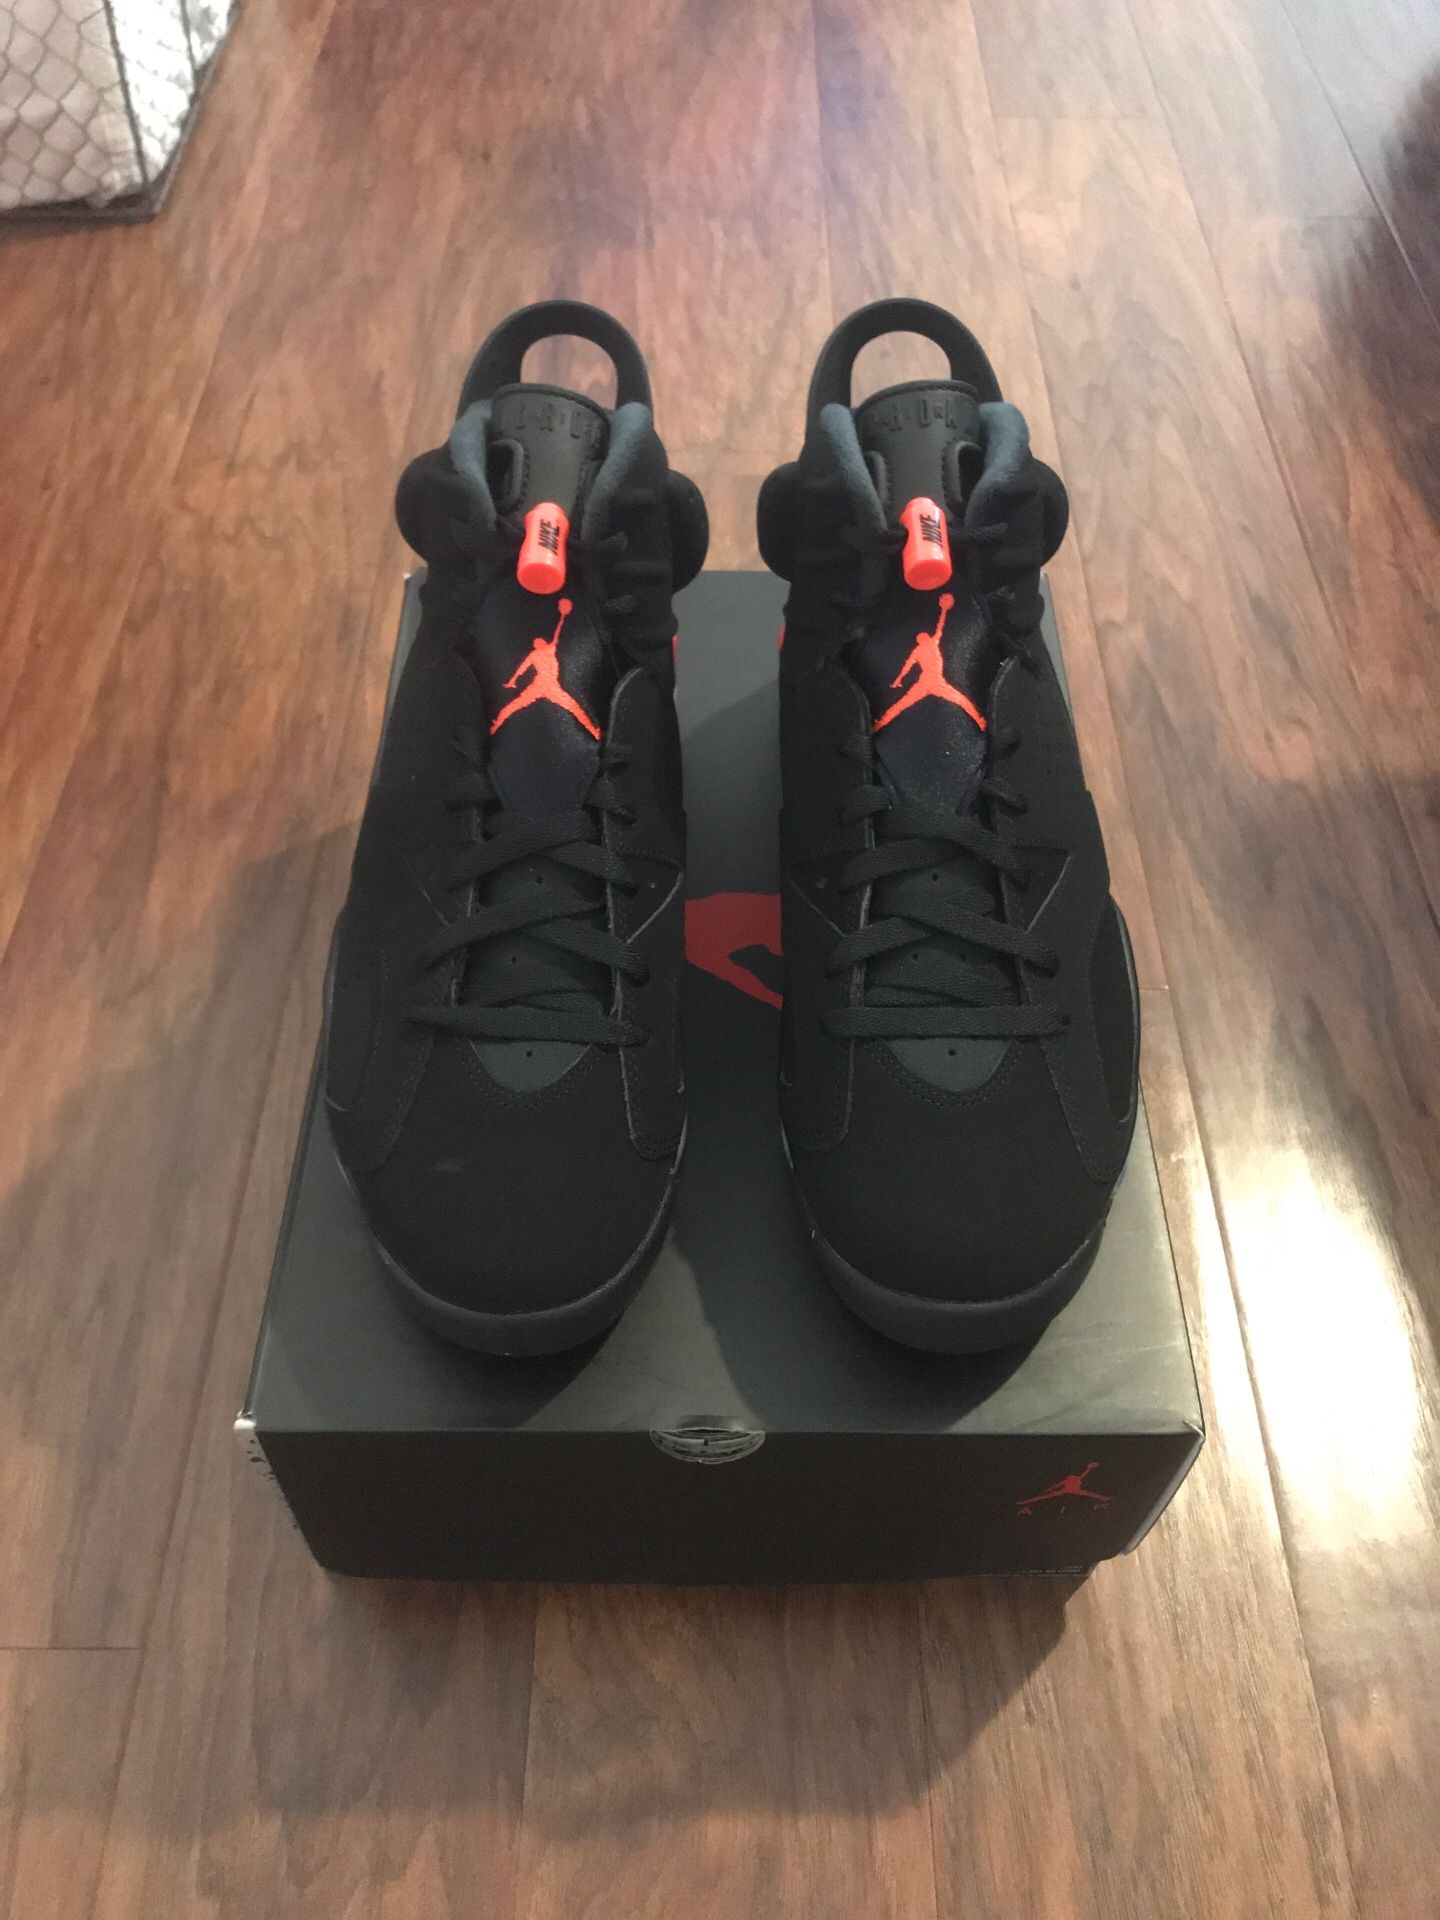 Air Jordan Retro 6 Black Infrared (2019)